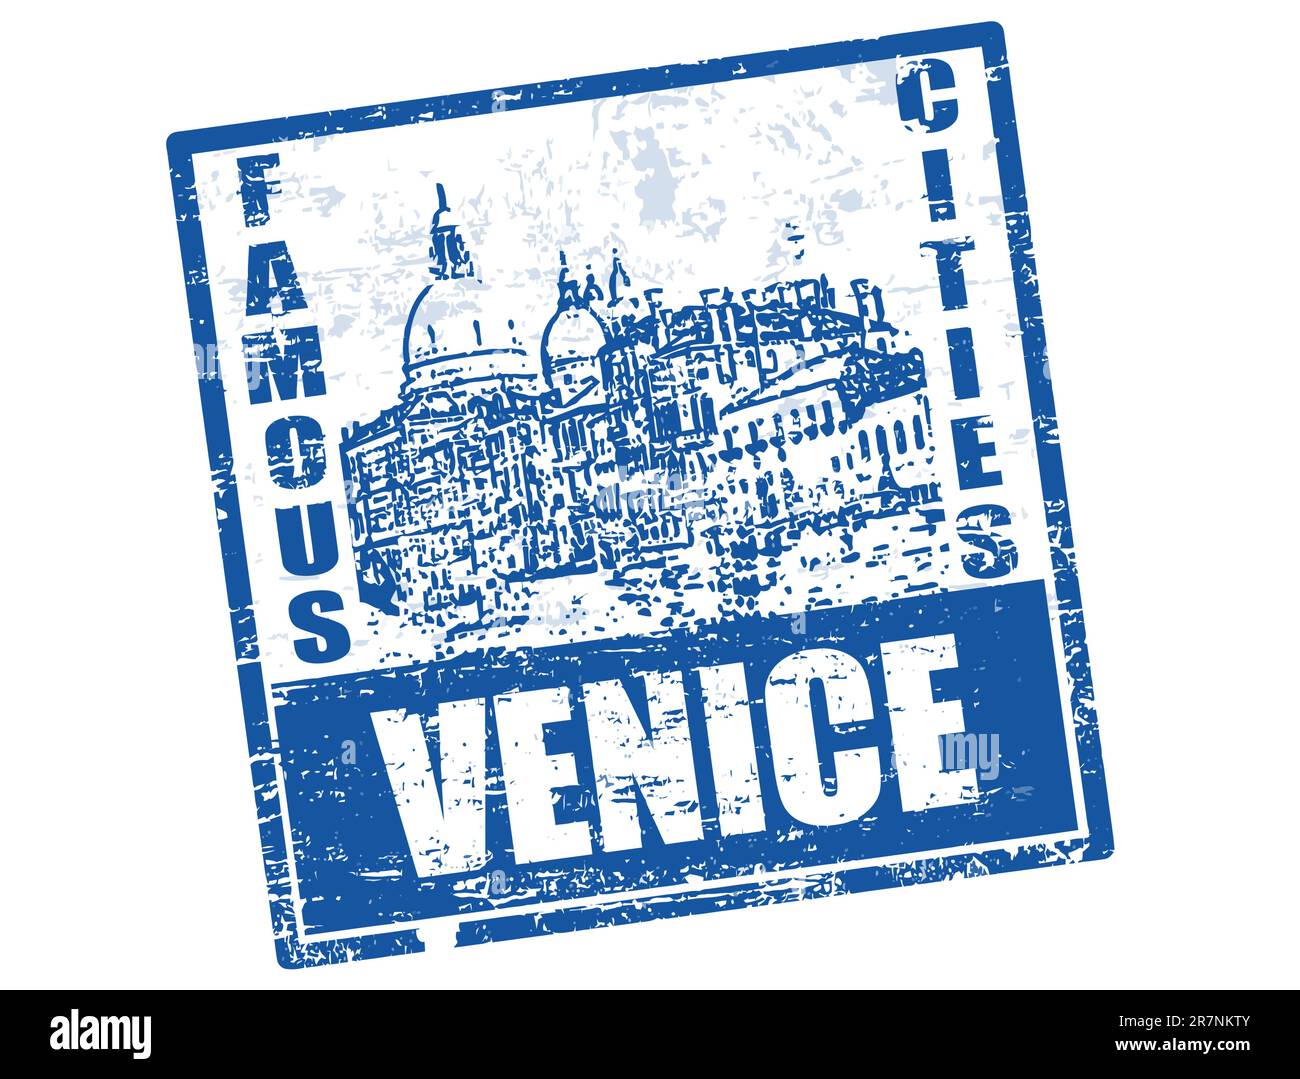 Timbre en caoutchouc bleu avec la forme du grand canal et le mot Venise écrit à l'intérieur Illustration de Vecteur